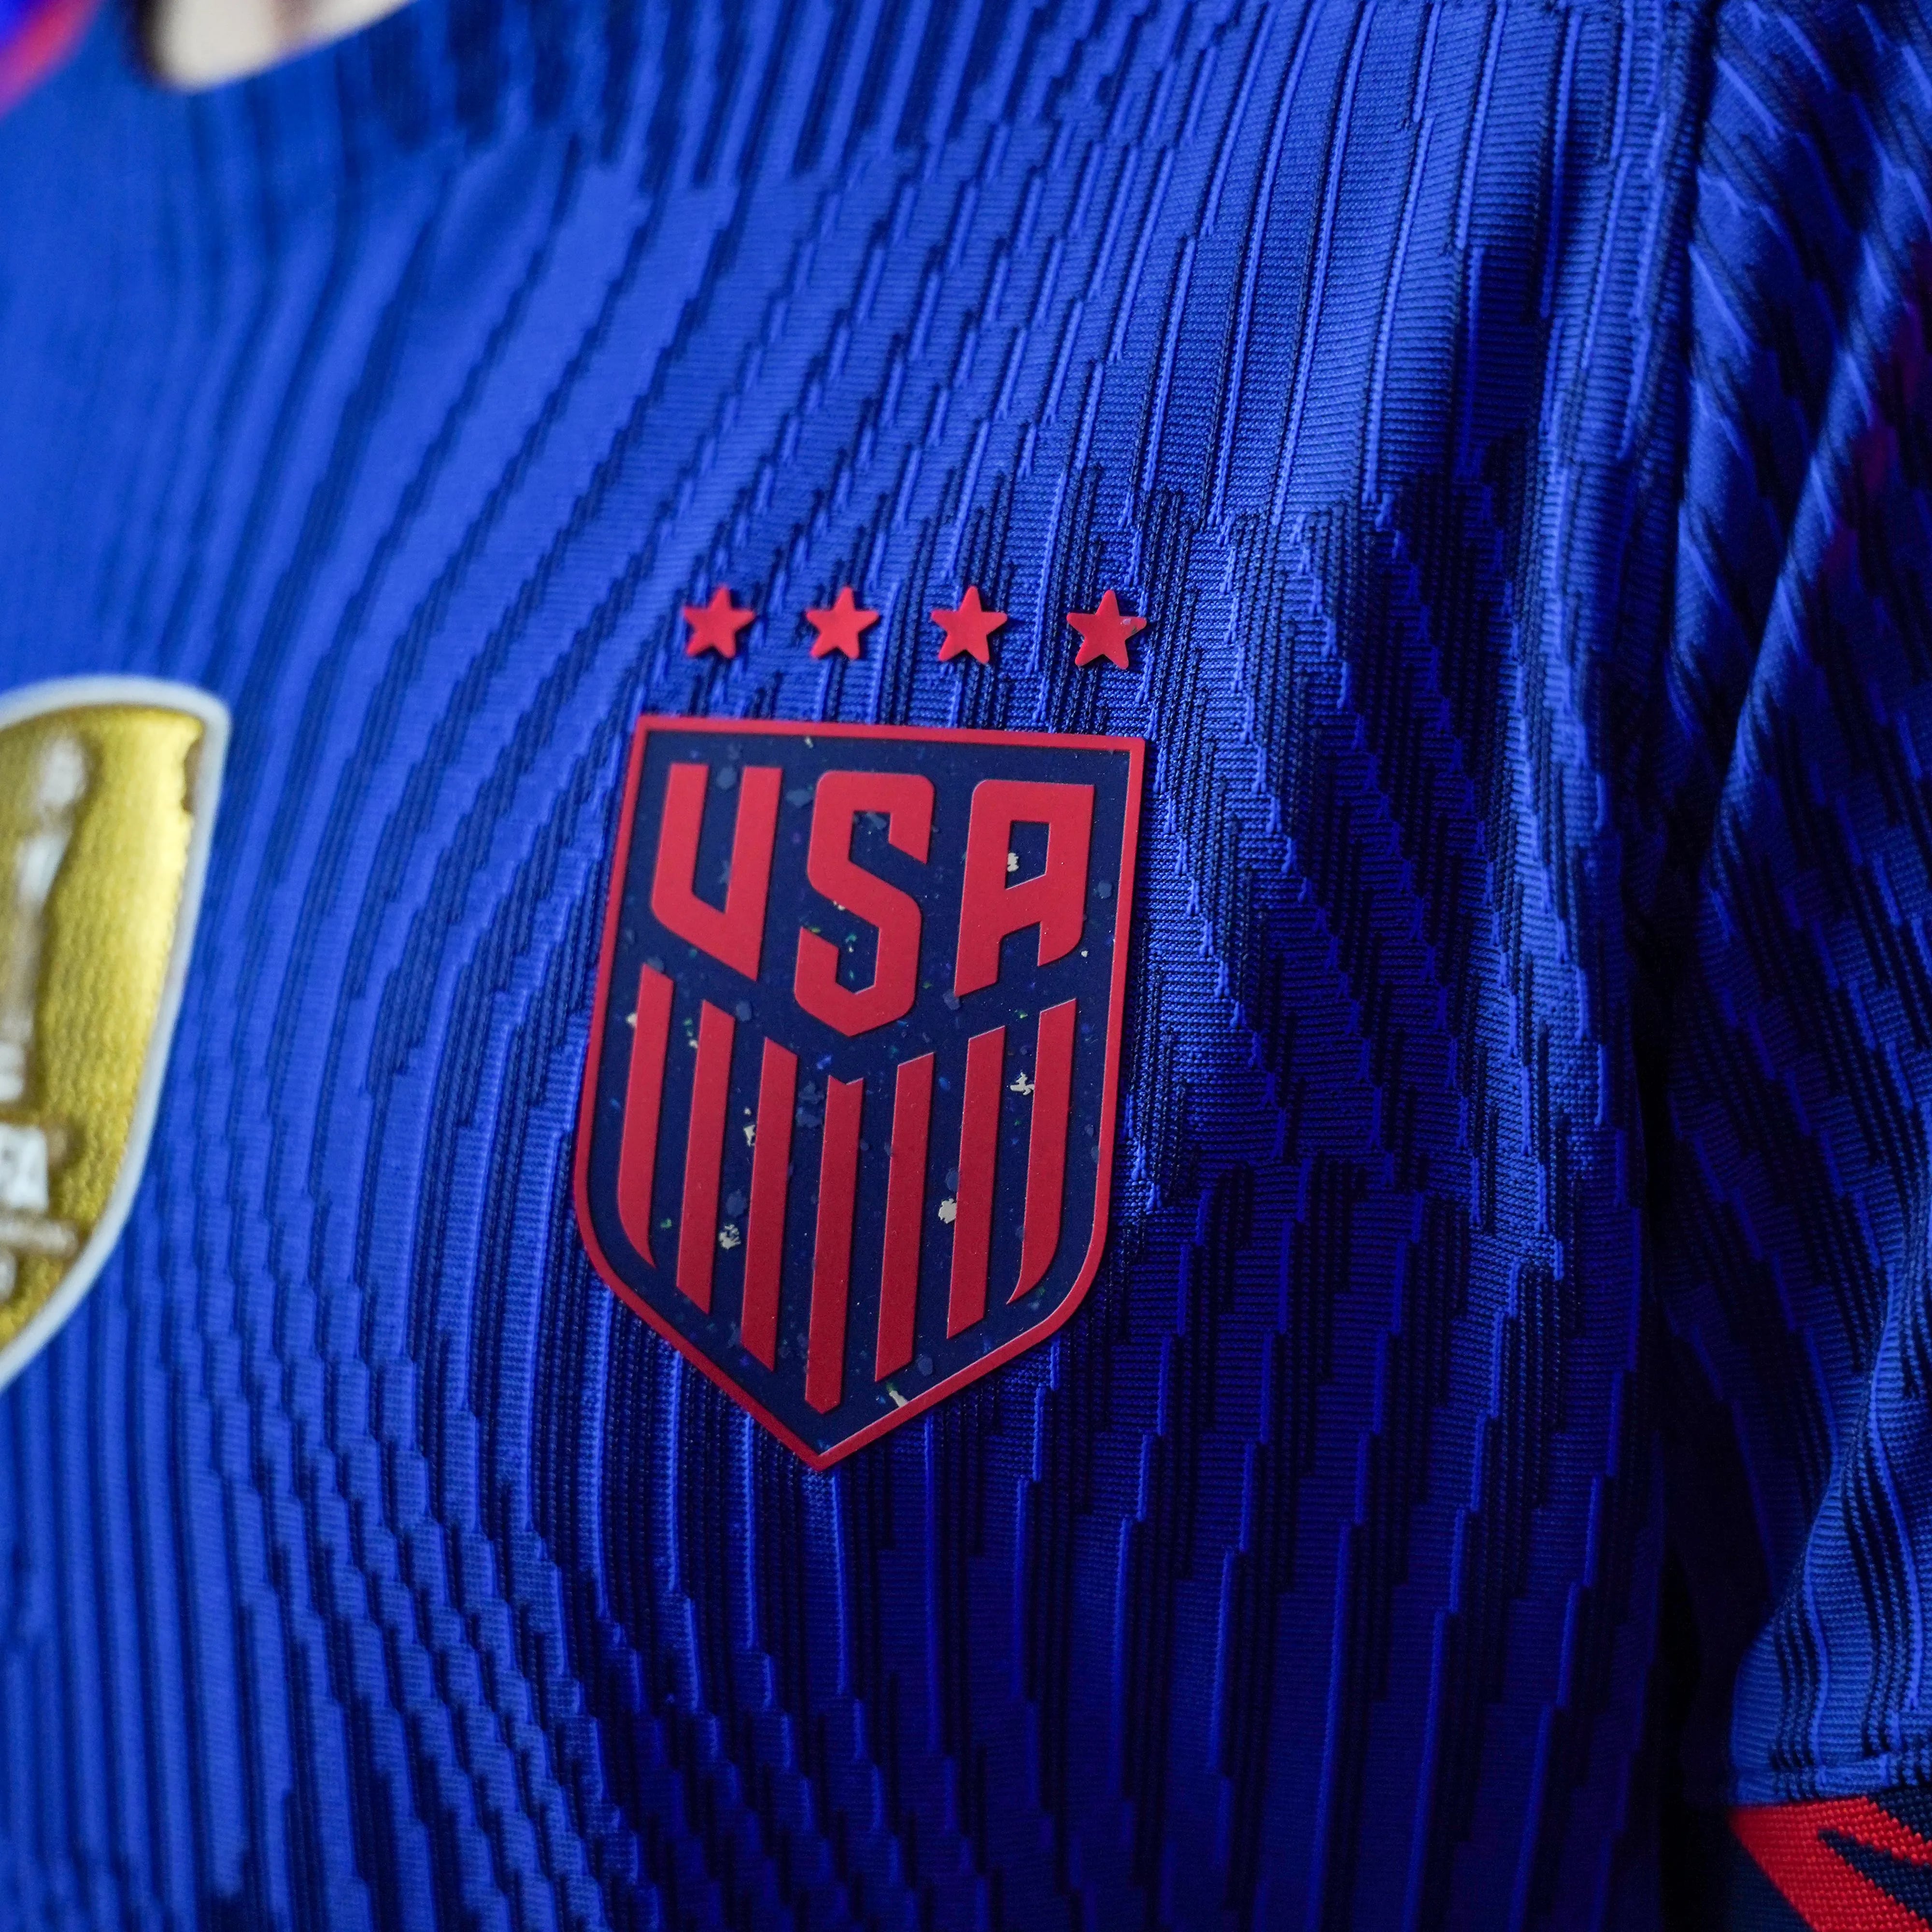 complicaties Probleem van mening zijn USA women's World Cup 2023 jerseys unveiled by Nike, U.S. Soccer